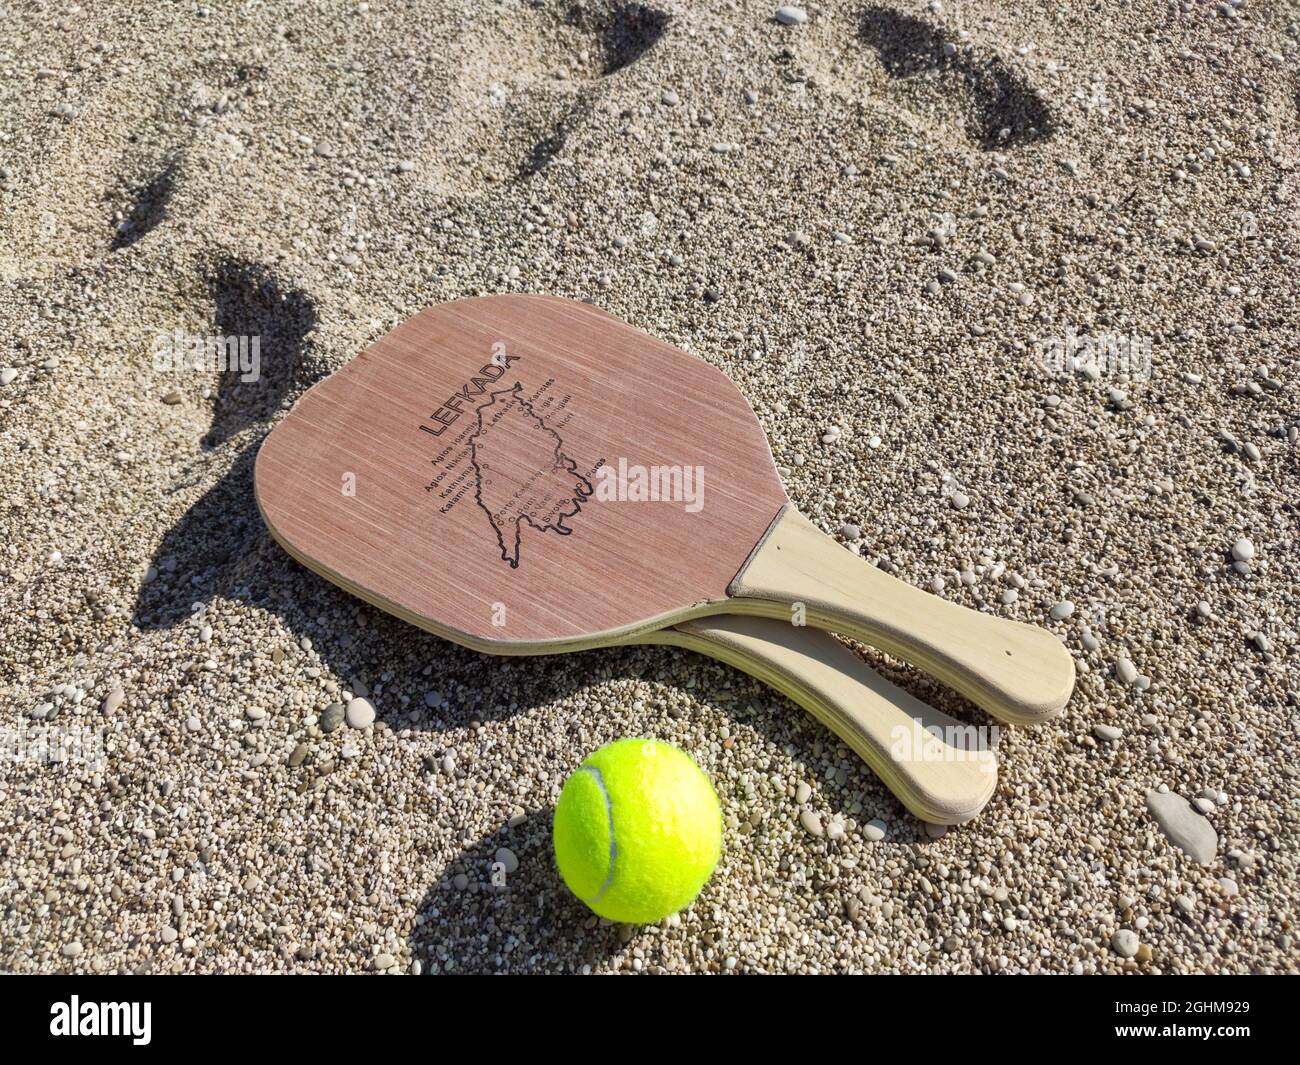 Matkot juego griego de paddle playa de tenis con raquetas de madera y pelota con mapa de la isla Lefkada. Equipamiento deportivo en la playa de arena de Grecia Foto de stock